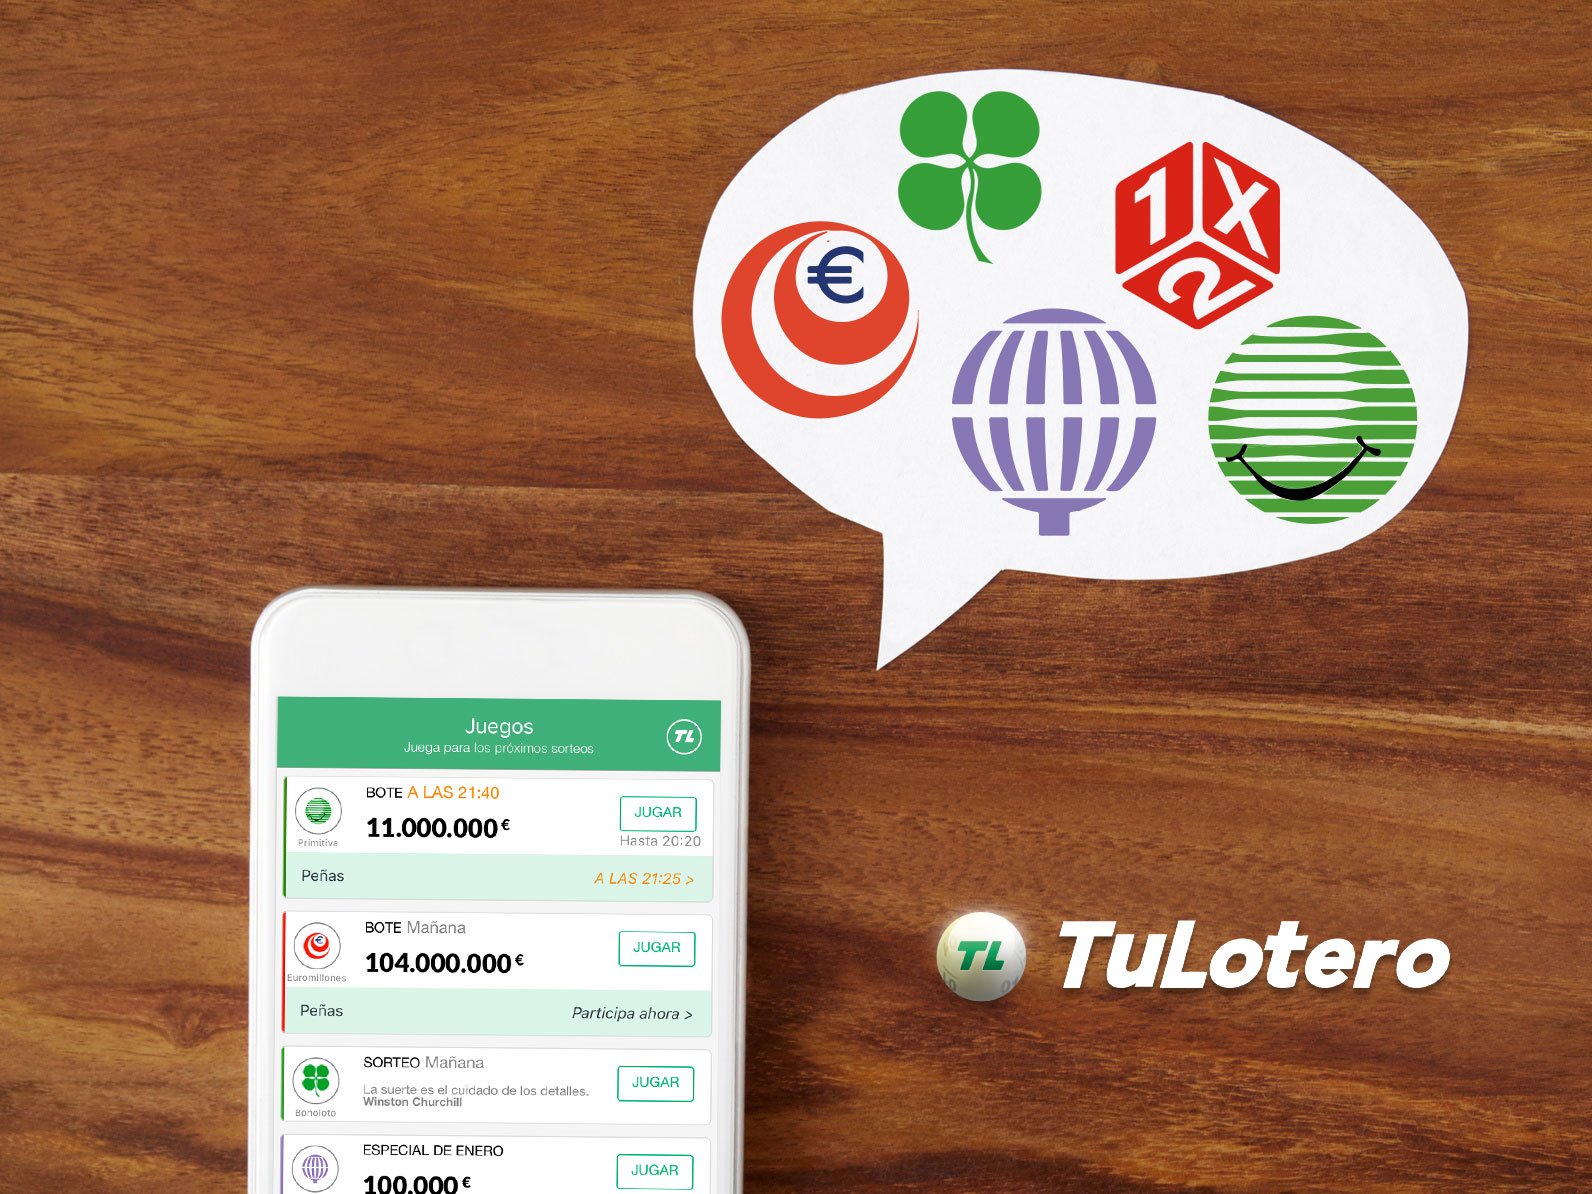 La App TuLotero te acerca la administración de lotería a tu bolsillo